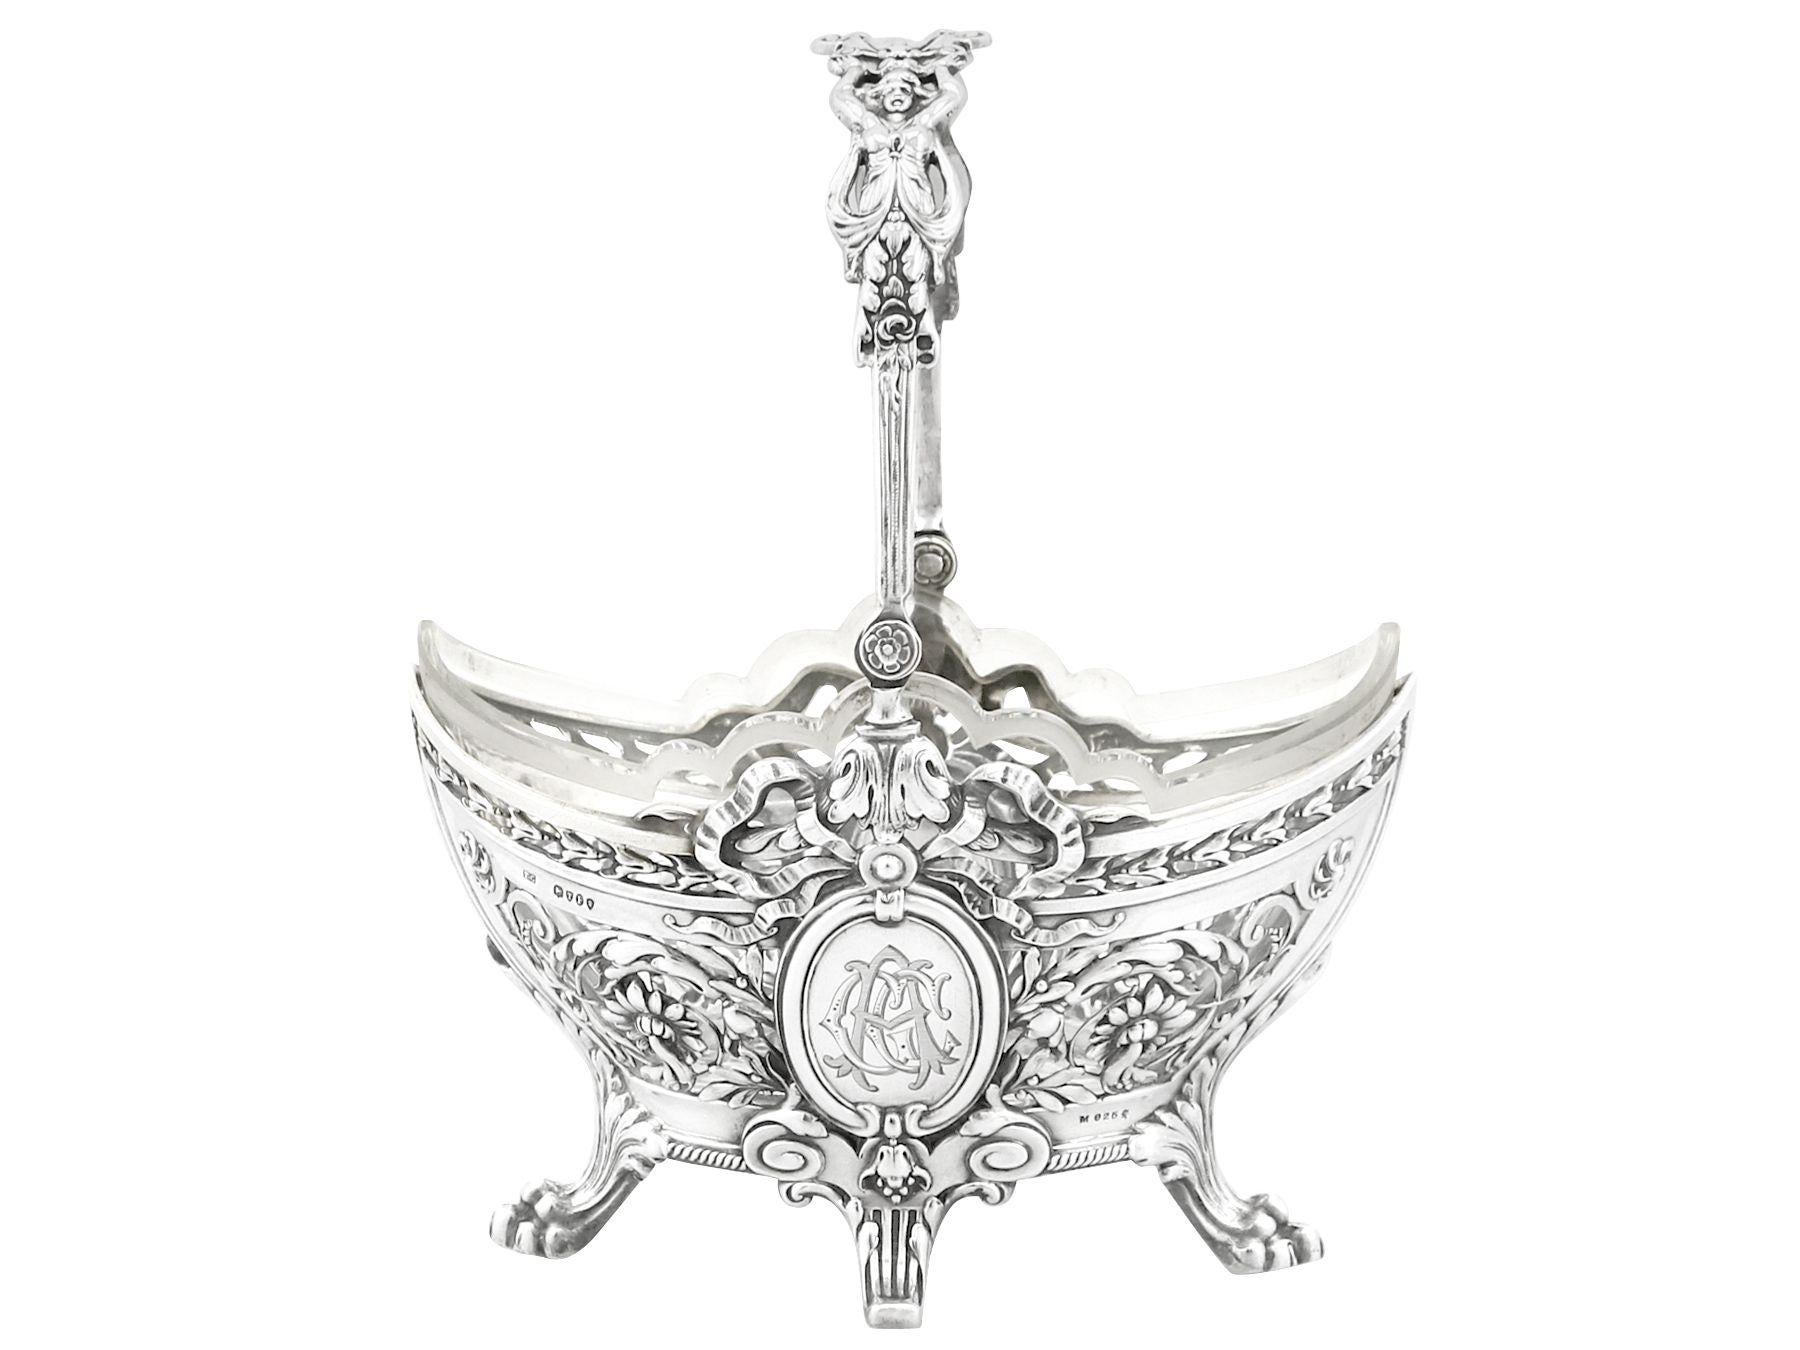 Ein außergewöhnlicher, feiner und beeindruckender antiker viktorianischer englischer Sterlingsilber-Bon-Bon-Korb; eine Ergänzung zu unserer Silberwaren-Sammlung.

Dieser außergewöhnliche antike viktorianische Sterlingsilberkorb hat eine ovale,